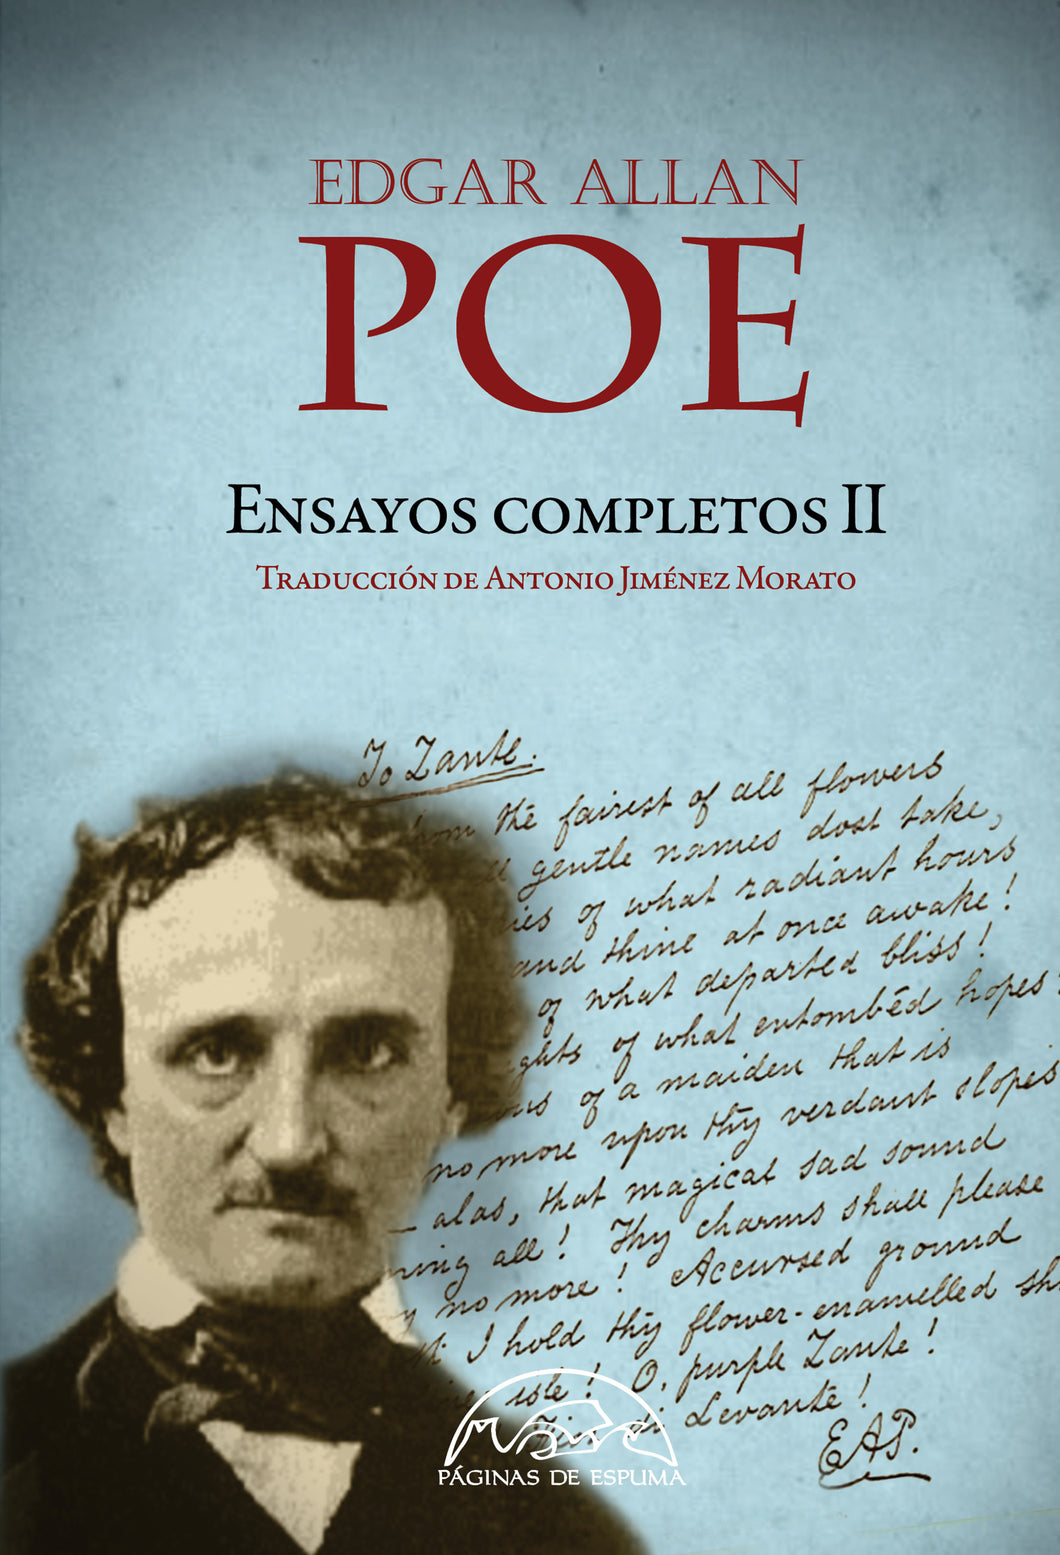 ENSAYOS COMPLETOS II - Edgar Allan Poe